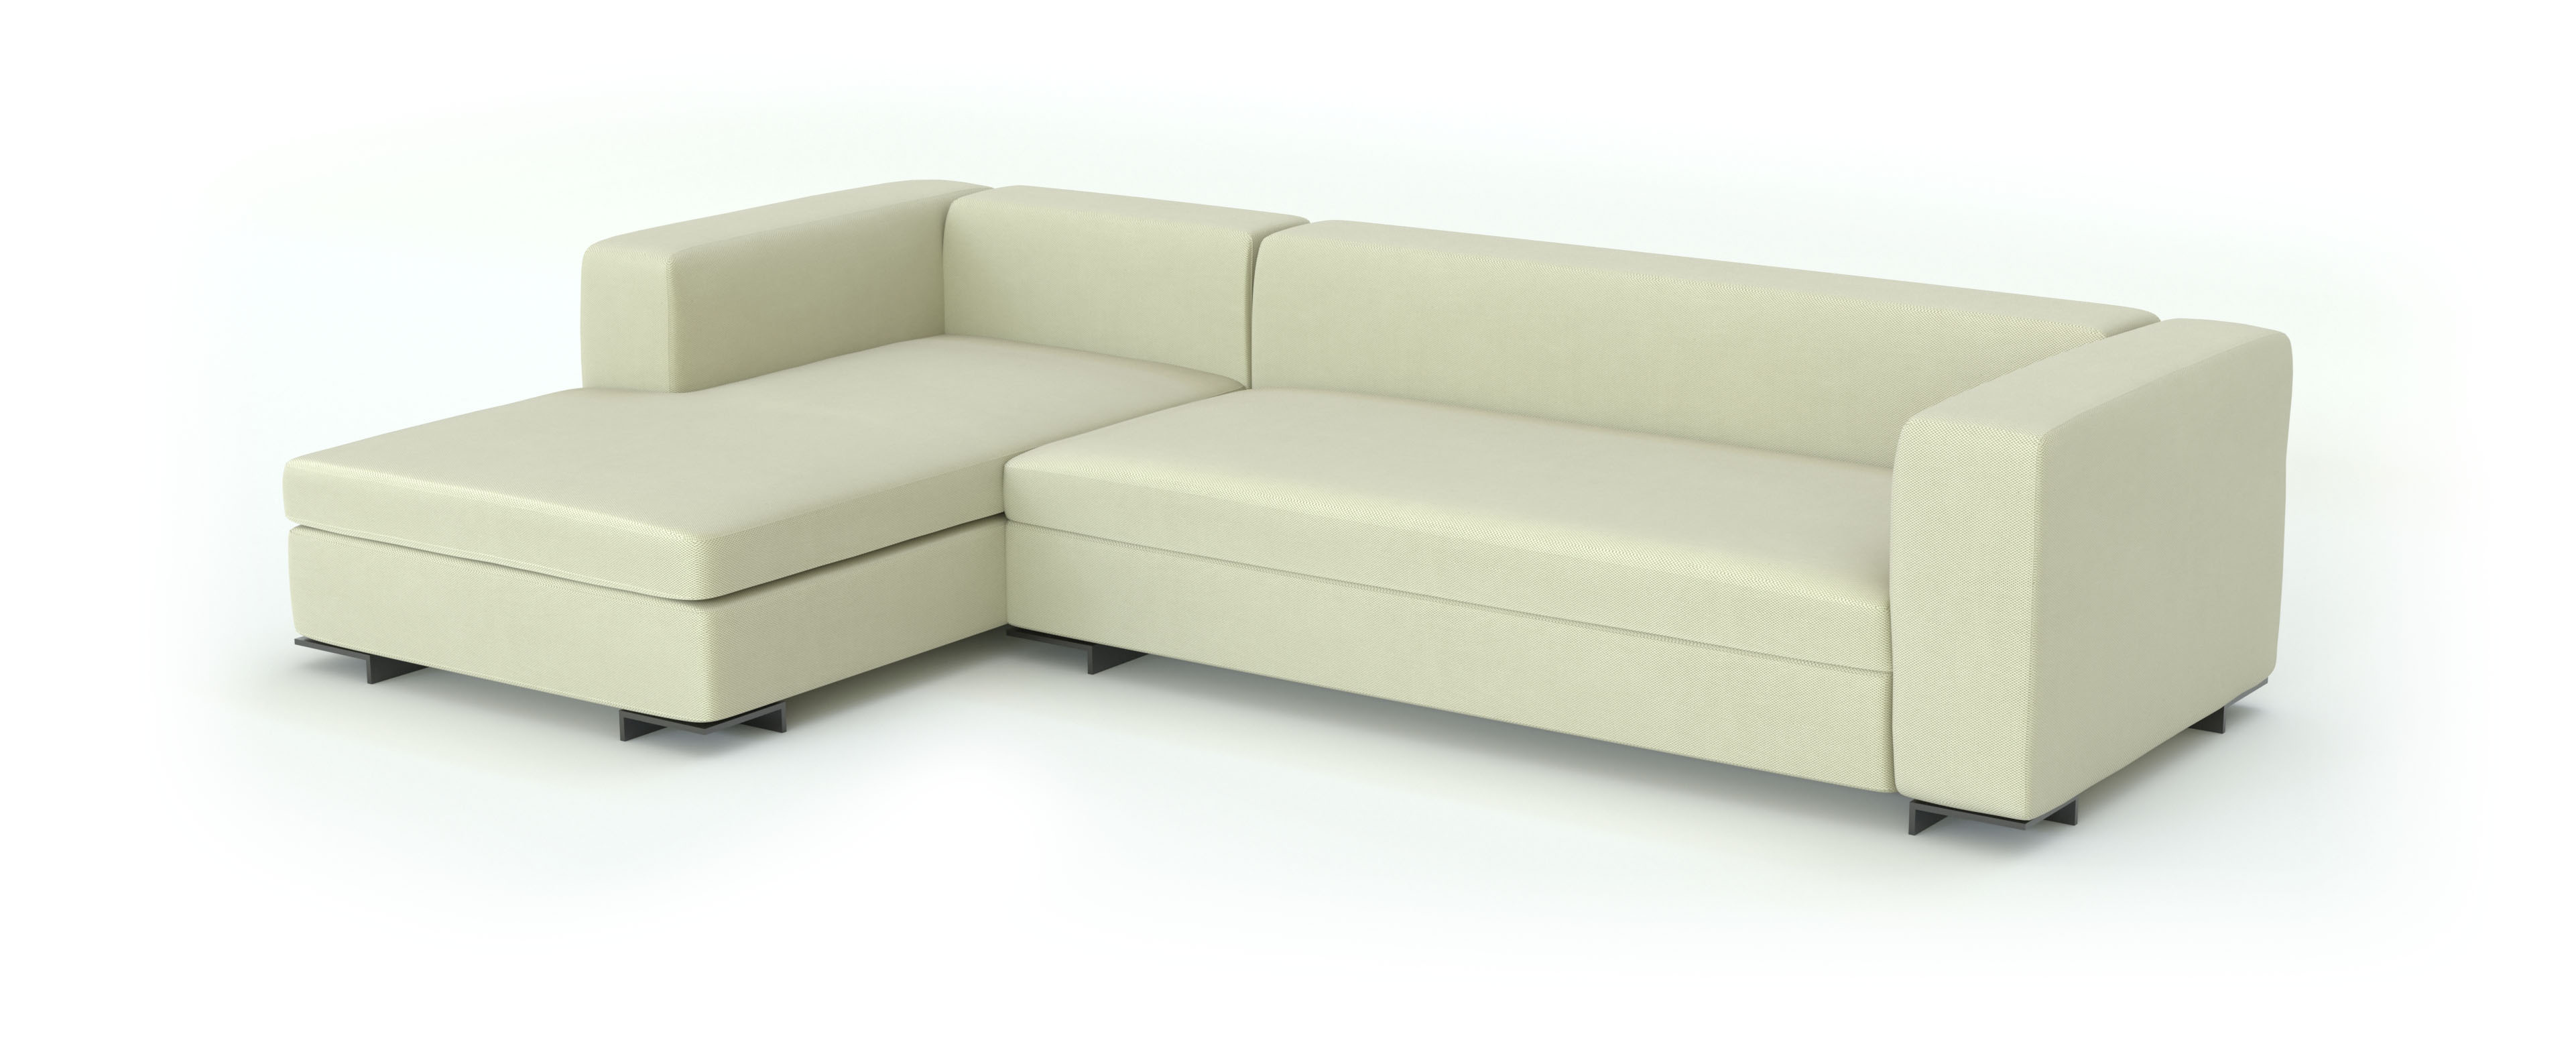 велюр ткань для мебели 3d модель дивана